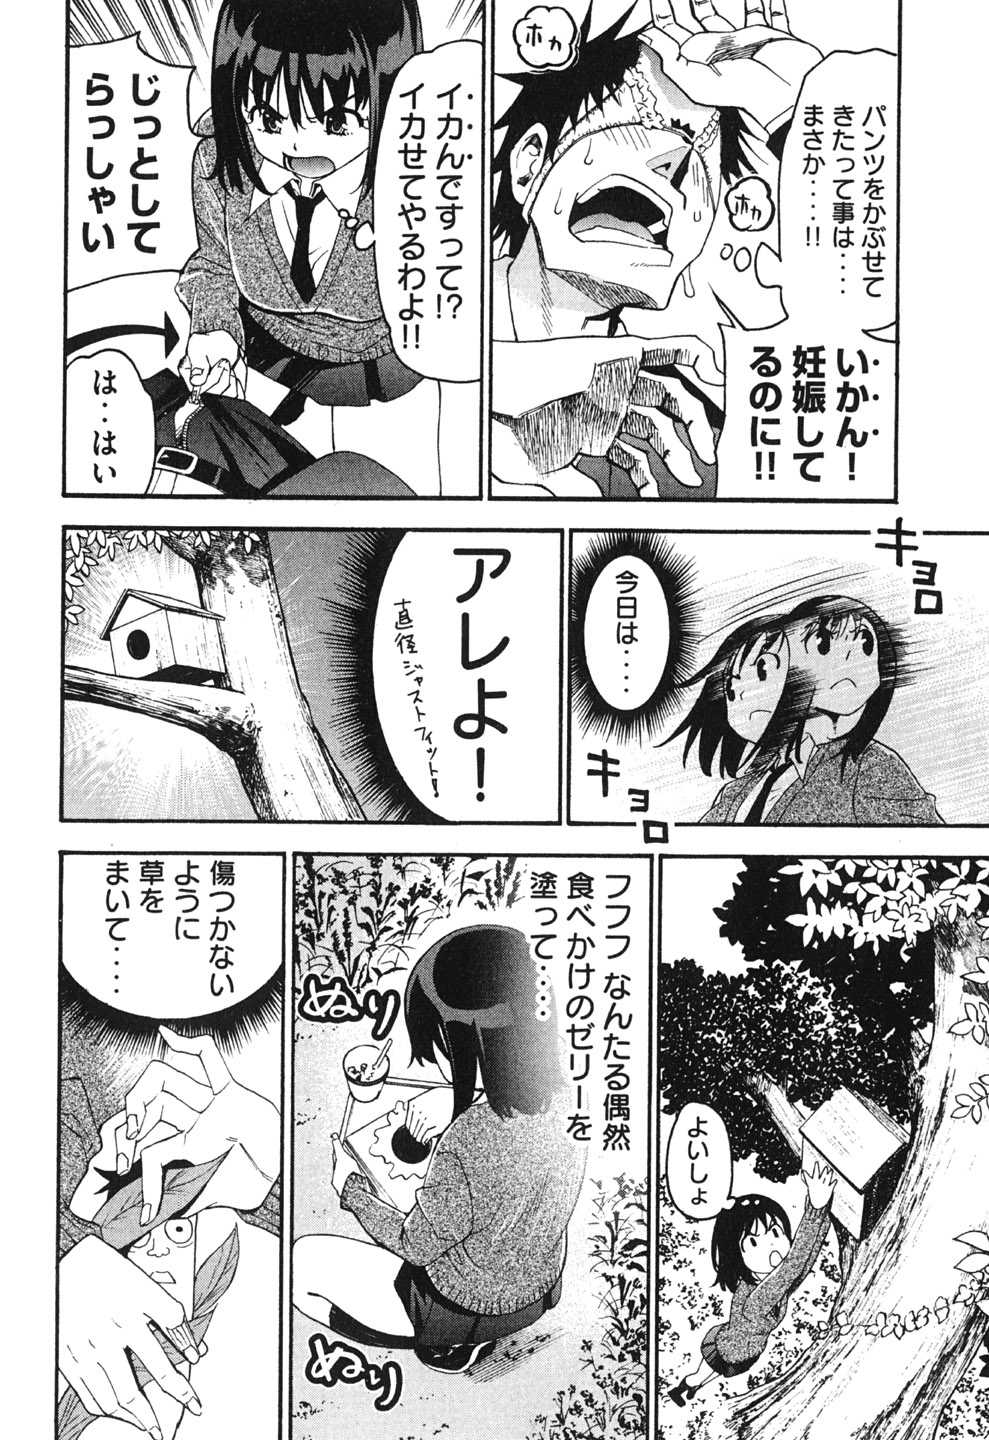 [Torikawa Sora] Bousou Shojo Vol.10 (End) [酉川宇宙] 暴想処女 第10巻 (完)